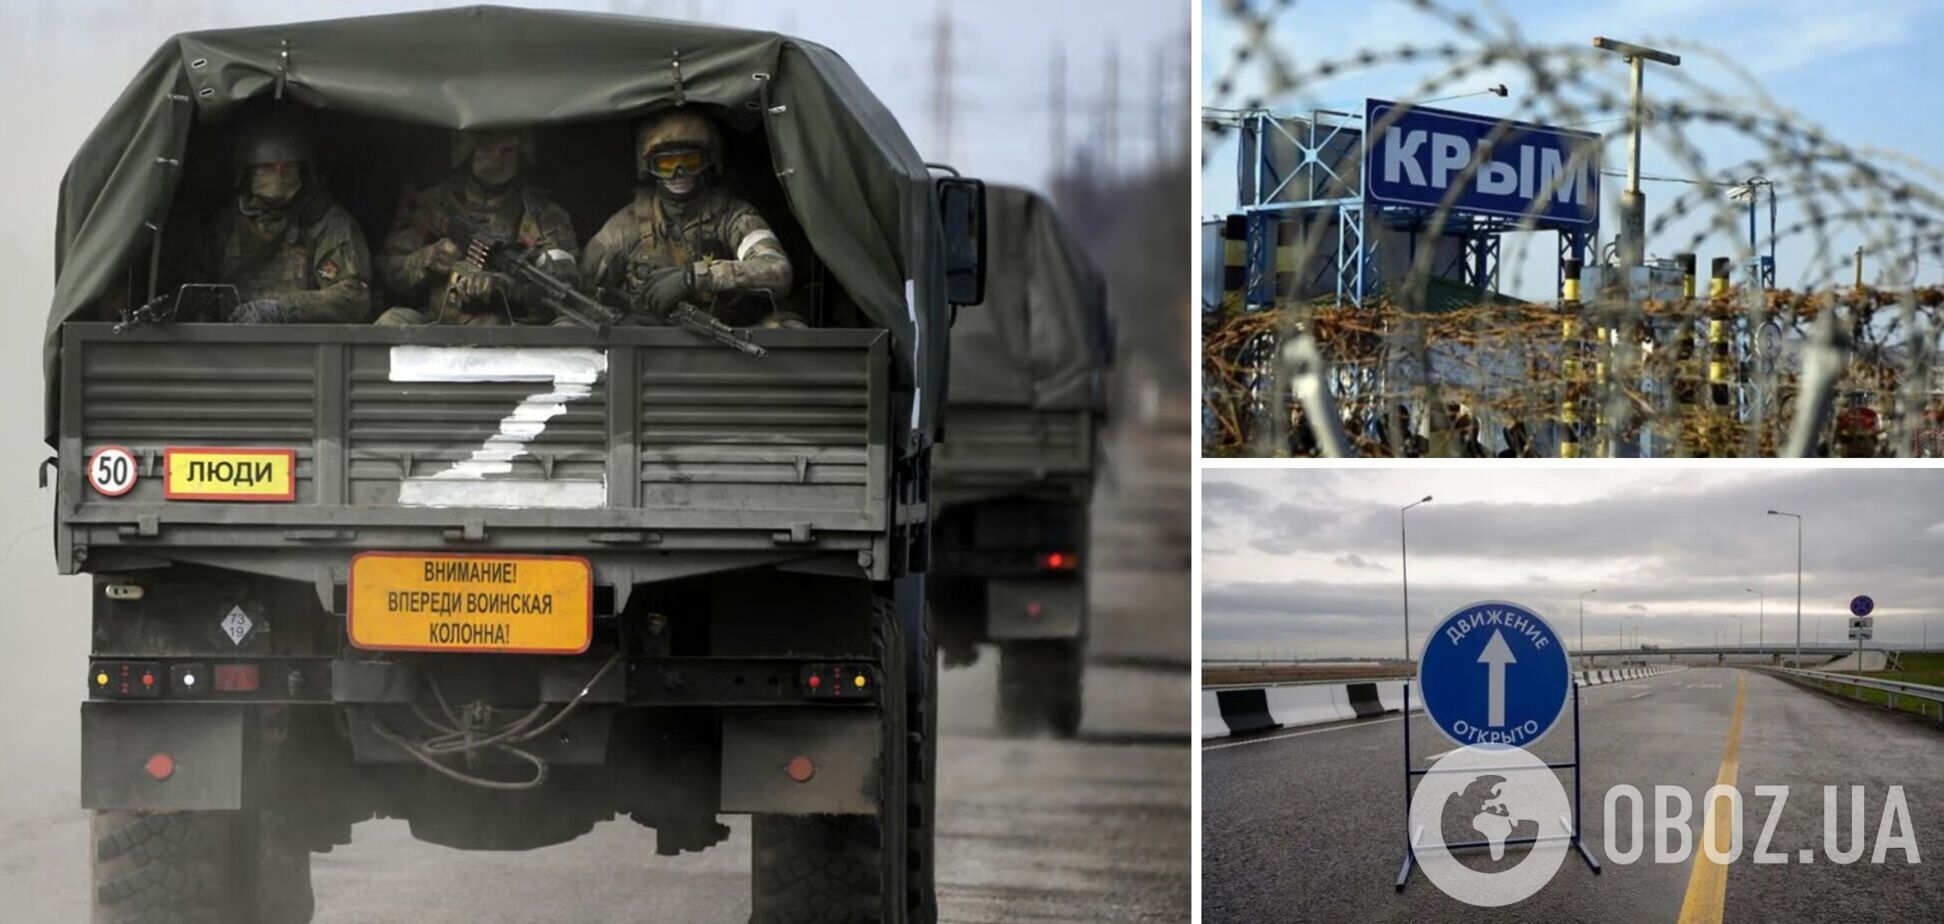 Оккупанты в Крыму усиливают репрессии